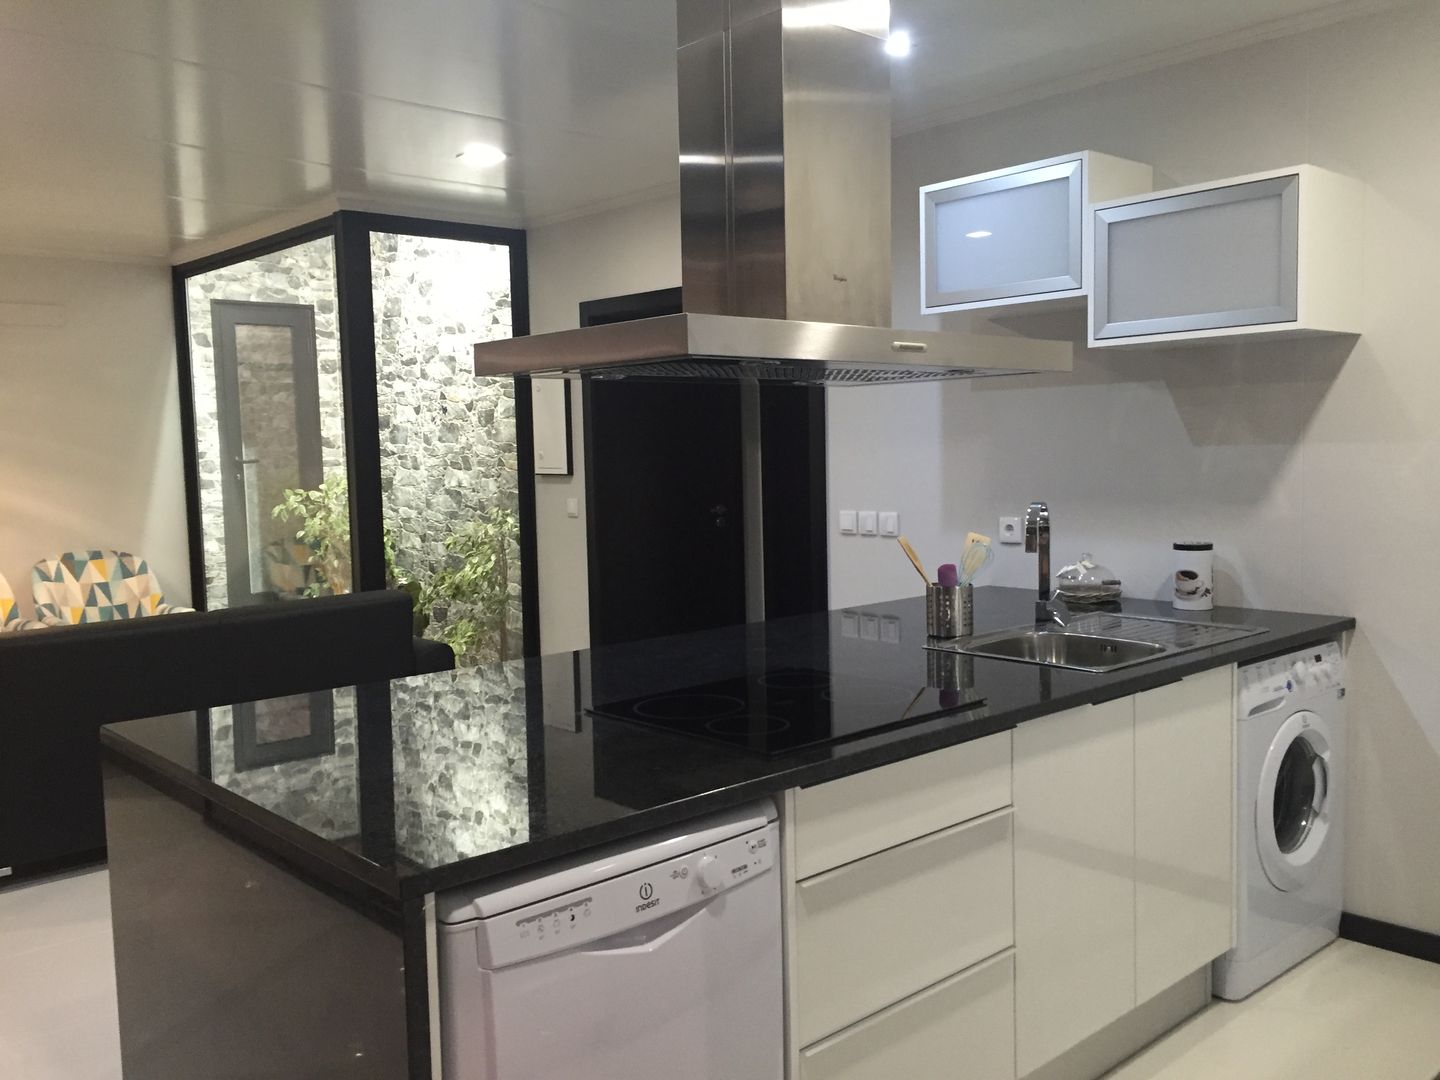 Casa modular com 2 quartos e jardim interior, KITUR KITUR Nhà bếp phong cách tối giản